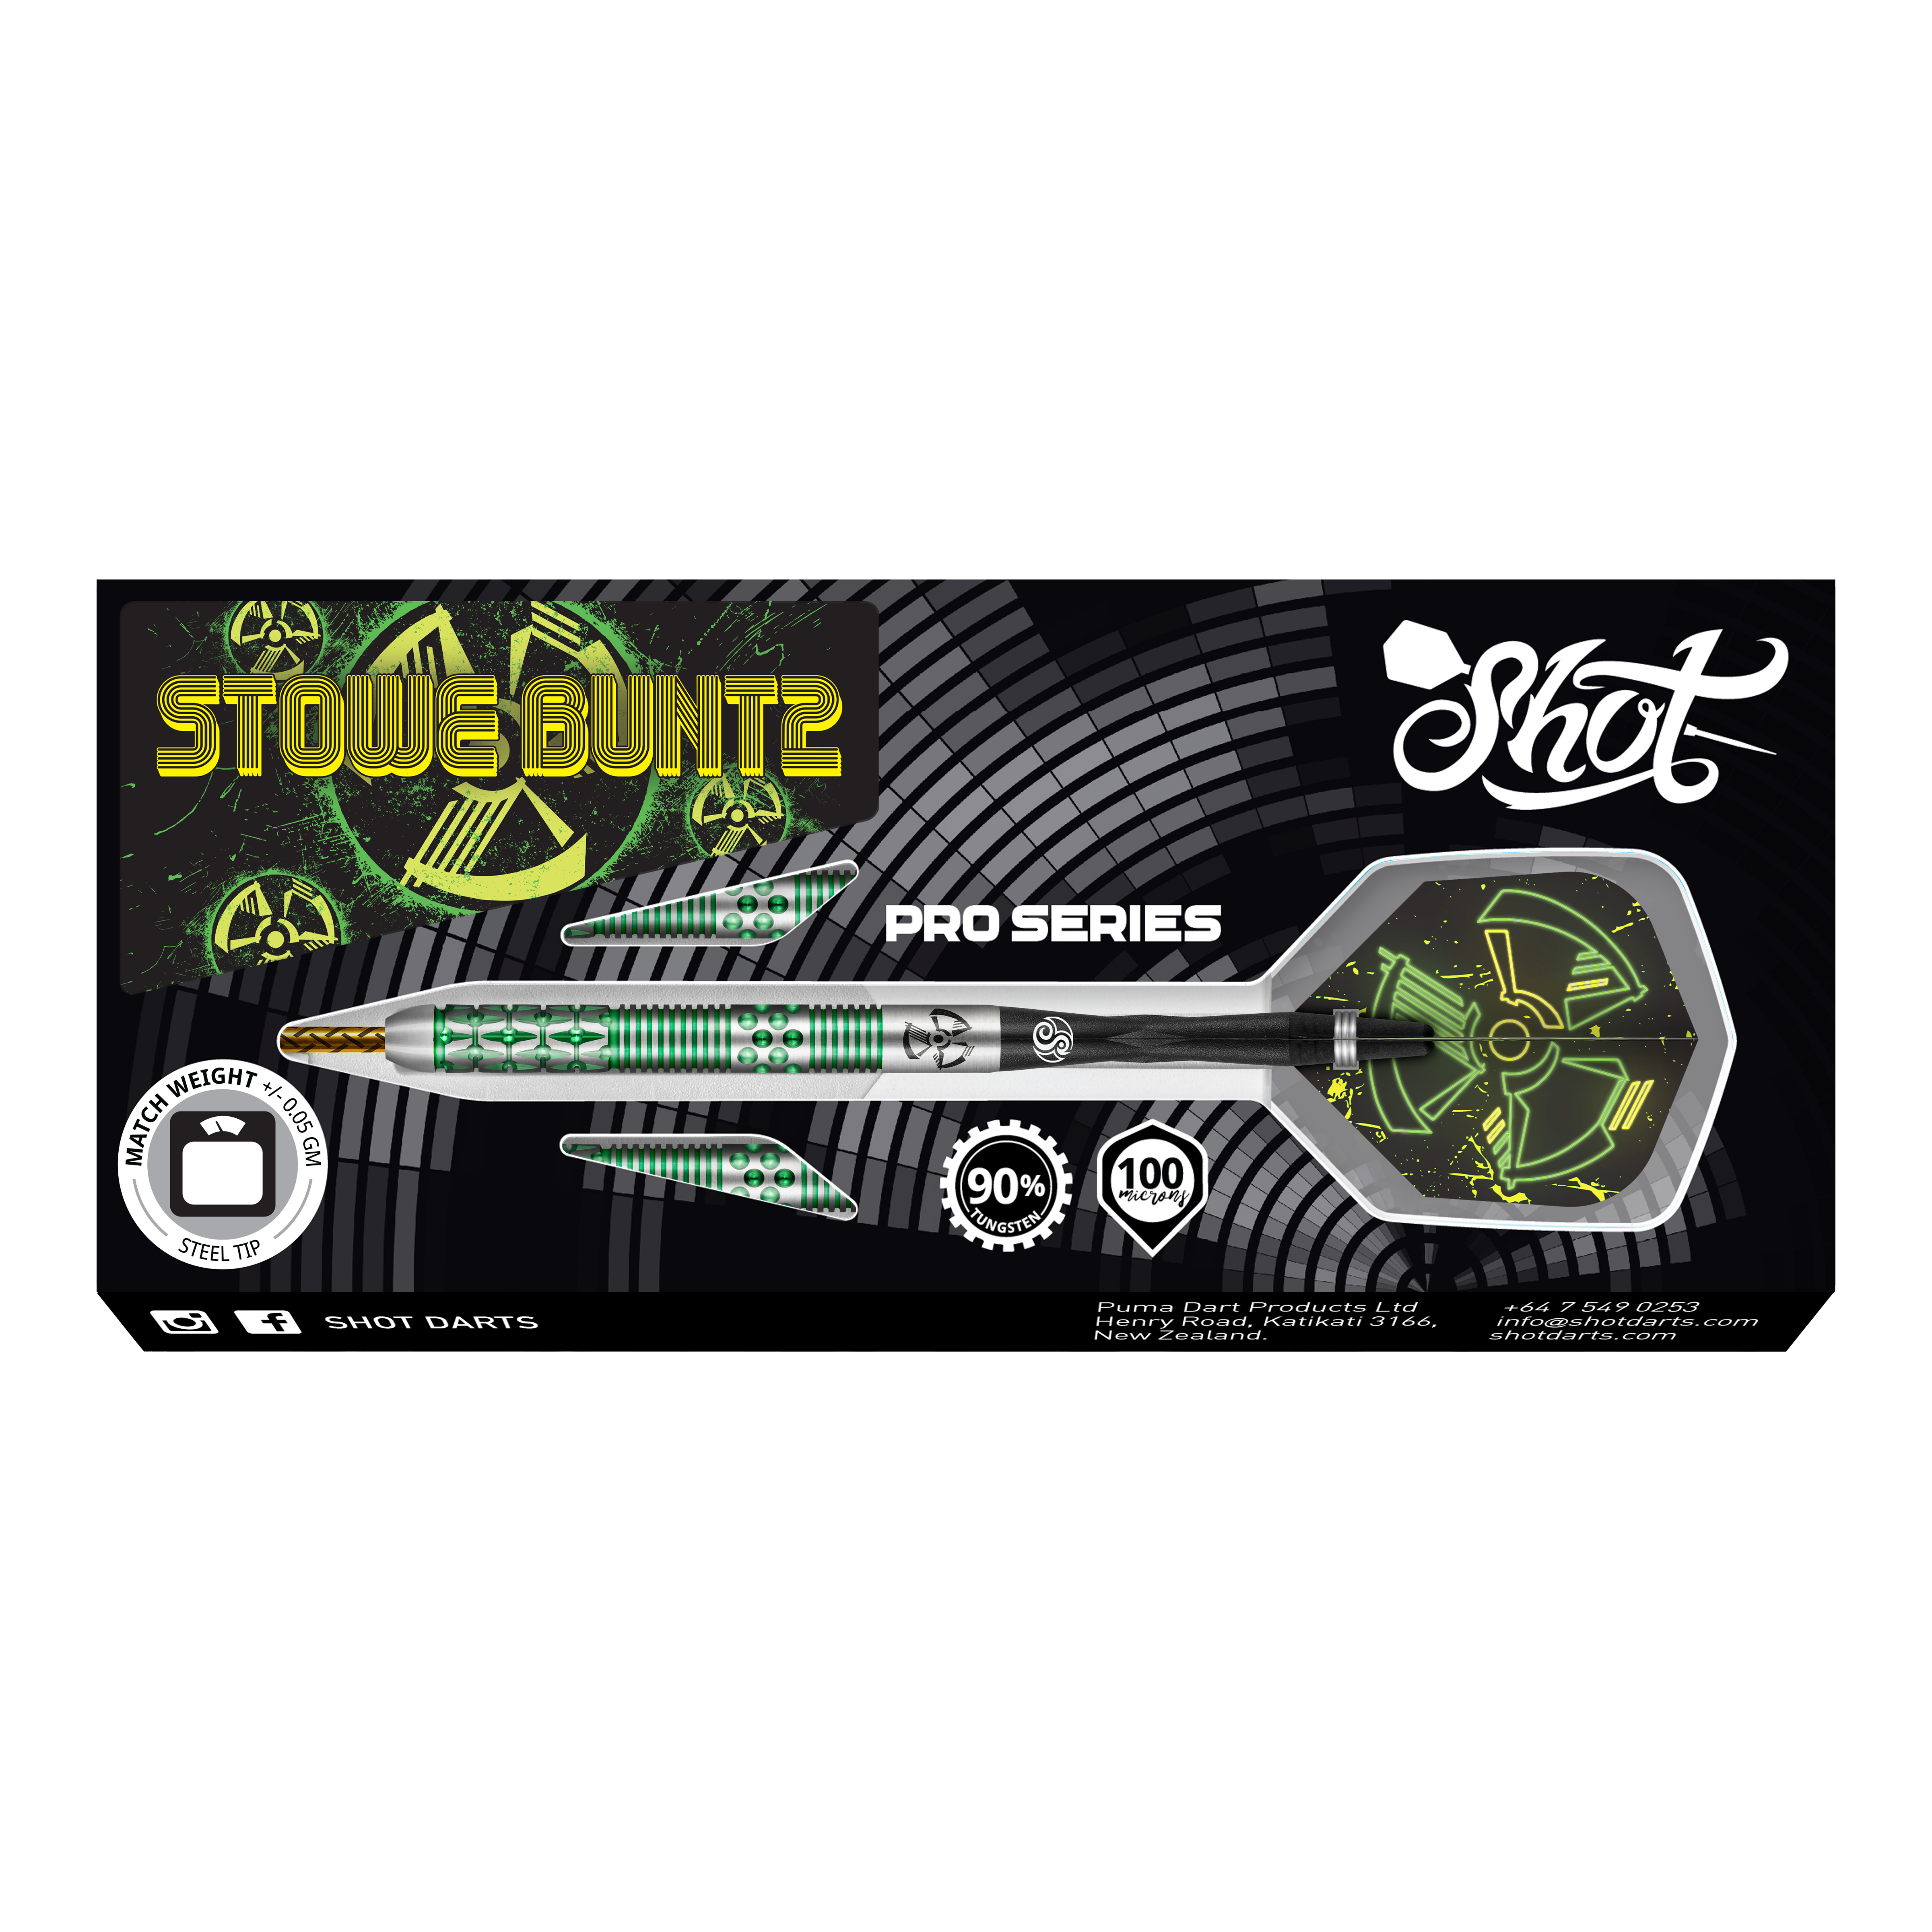 Shot Pro-Series Stowe Buntz 2 Steeldarts - 23g